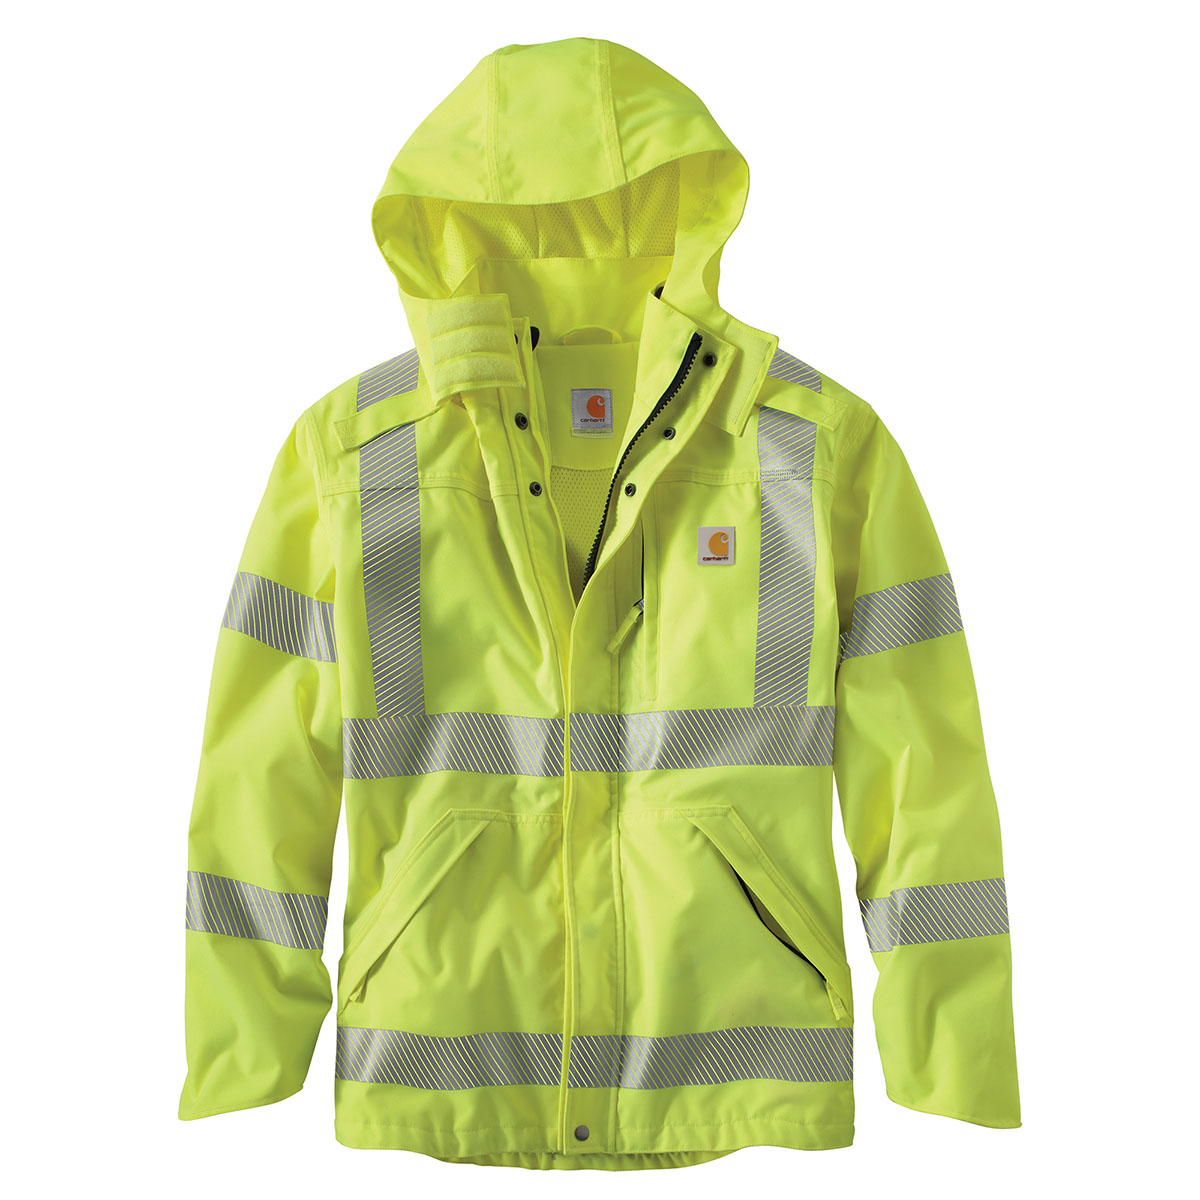 Carhartt Men's High-Visibility Class 3 Waterproof Jacket